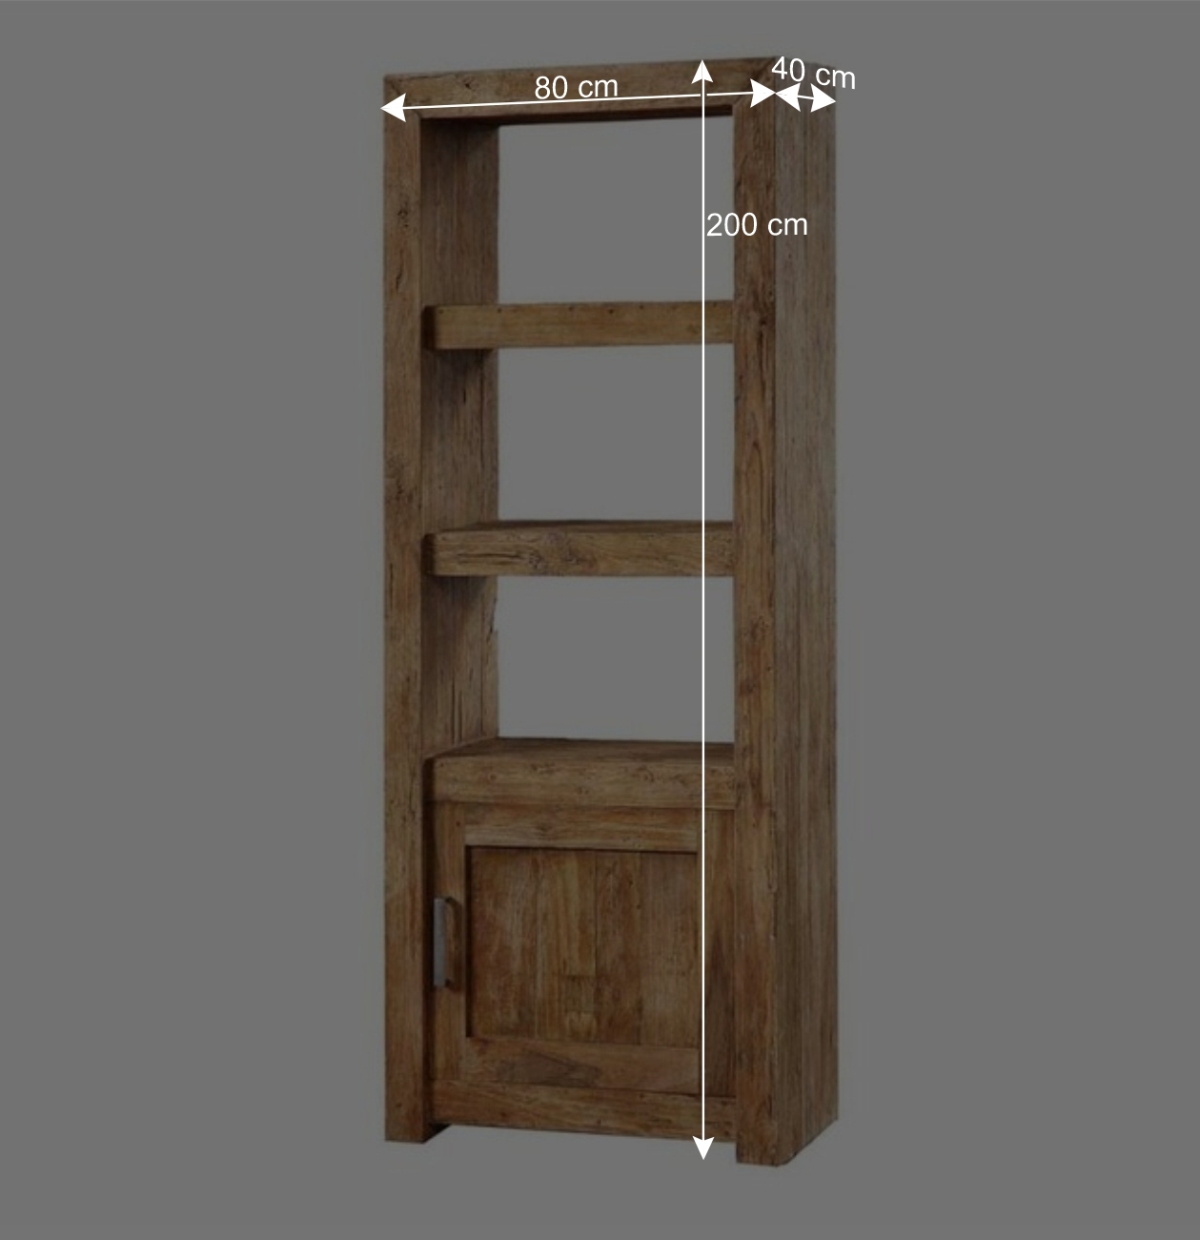 1 Monument Tür Teak Recyclingholz mit Kombi-Regal - Böden 2 & aus 80x200cm